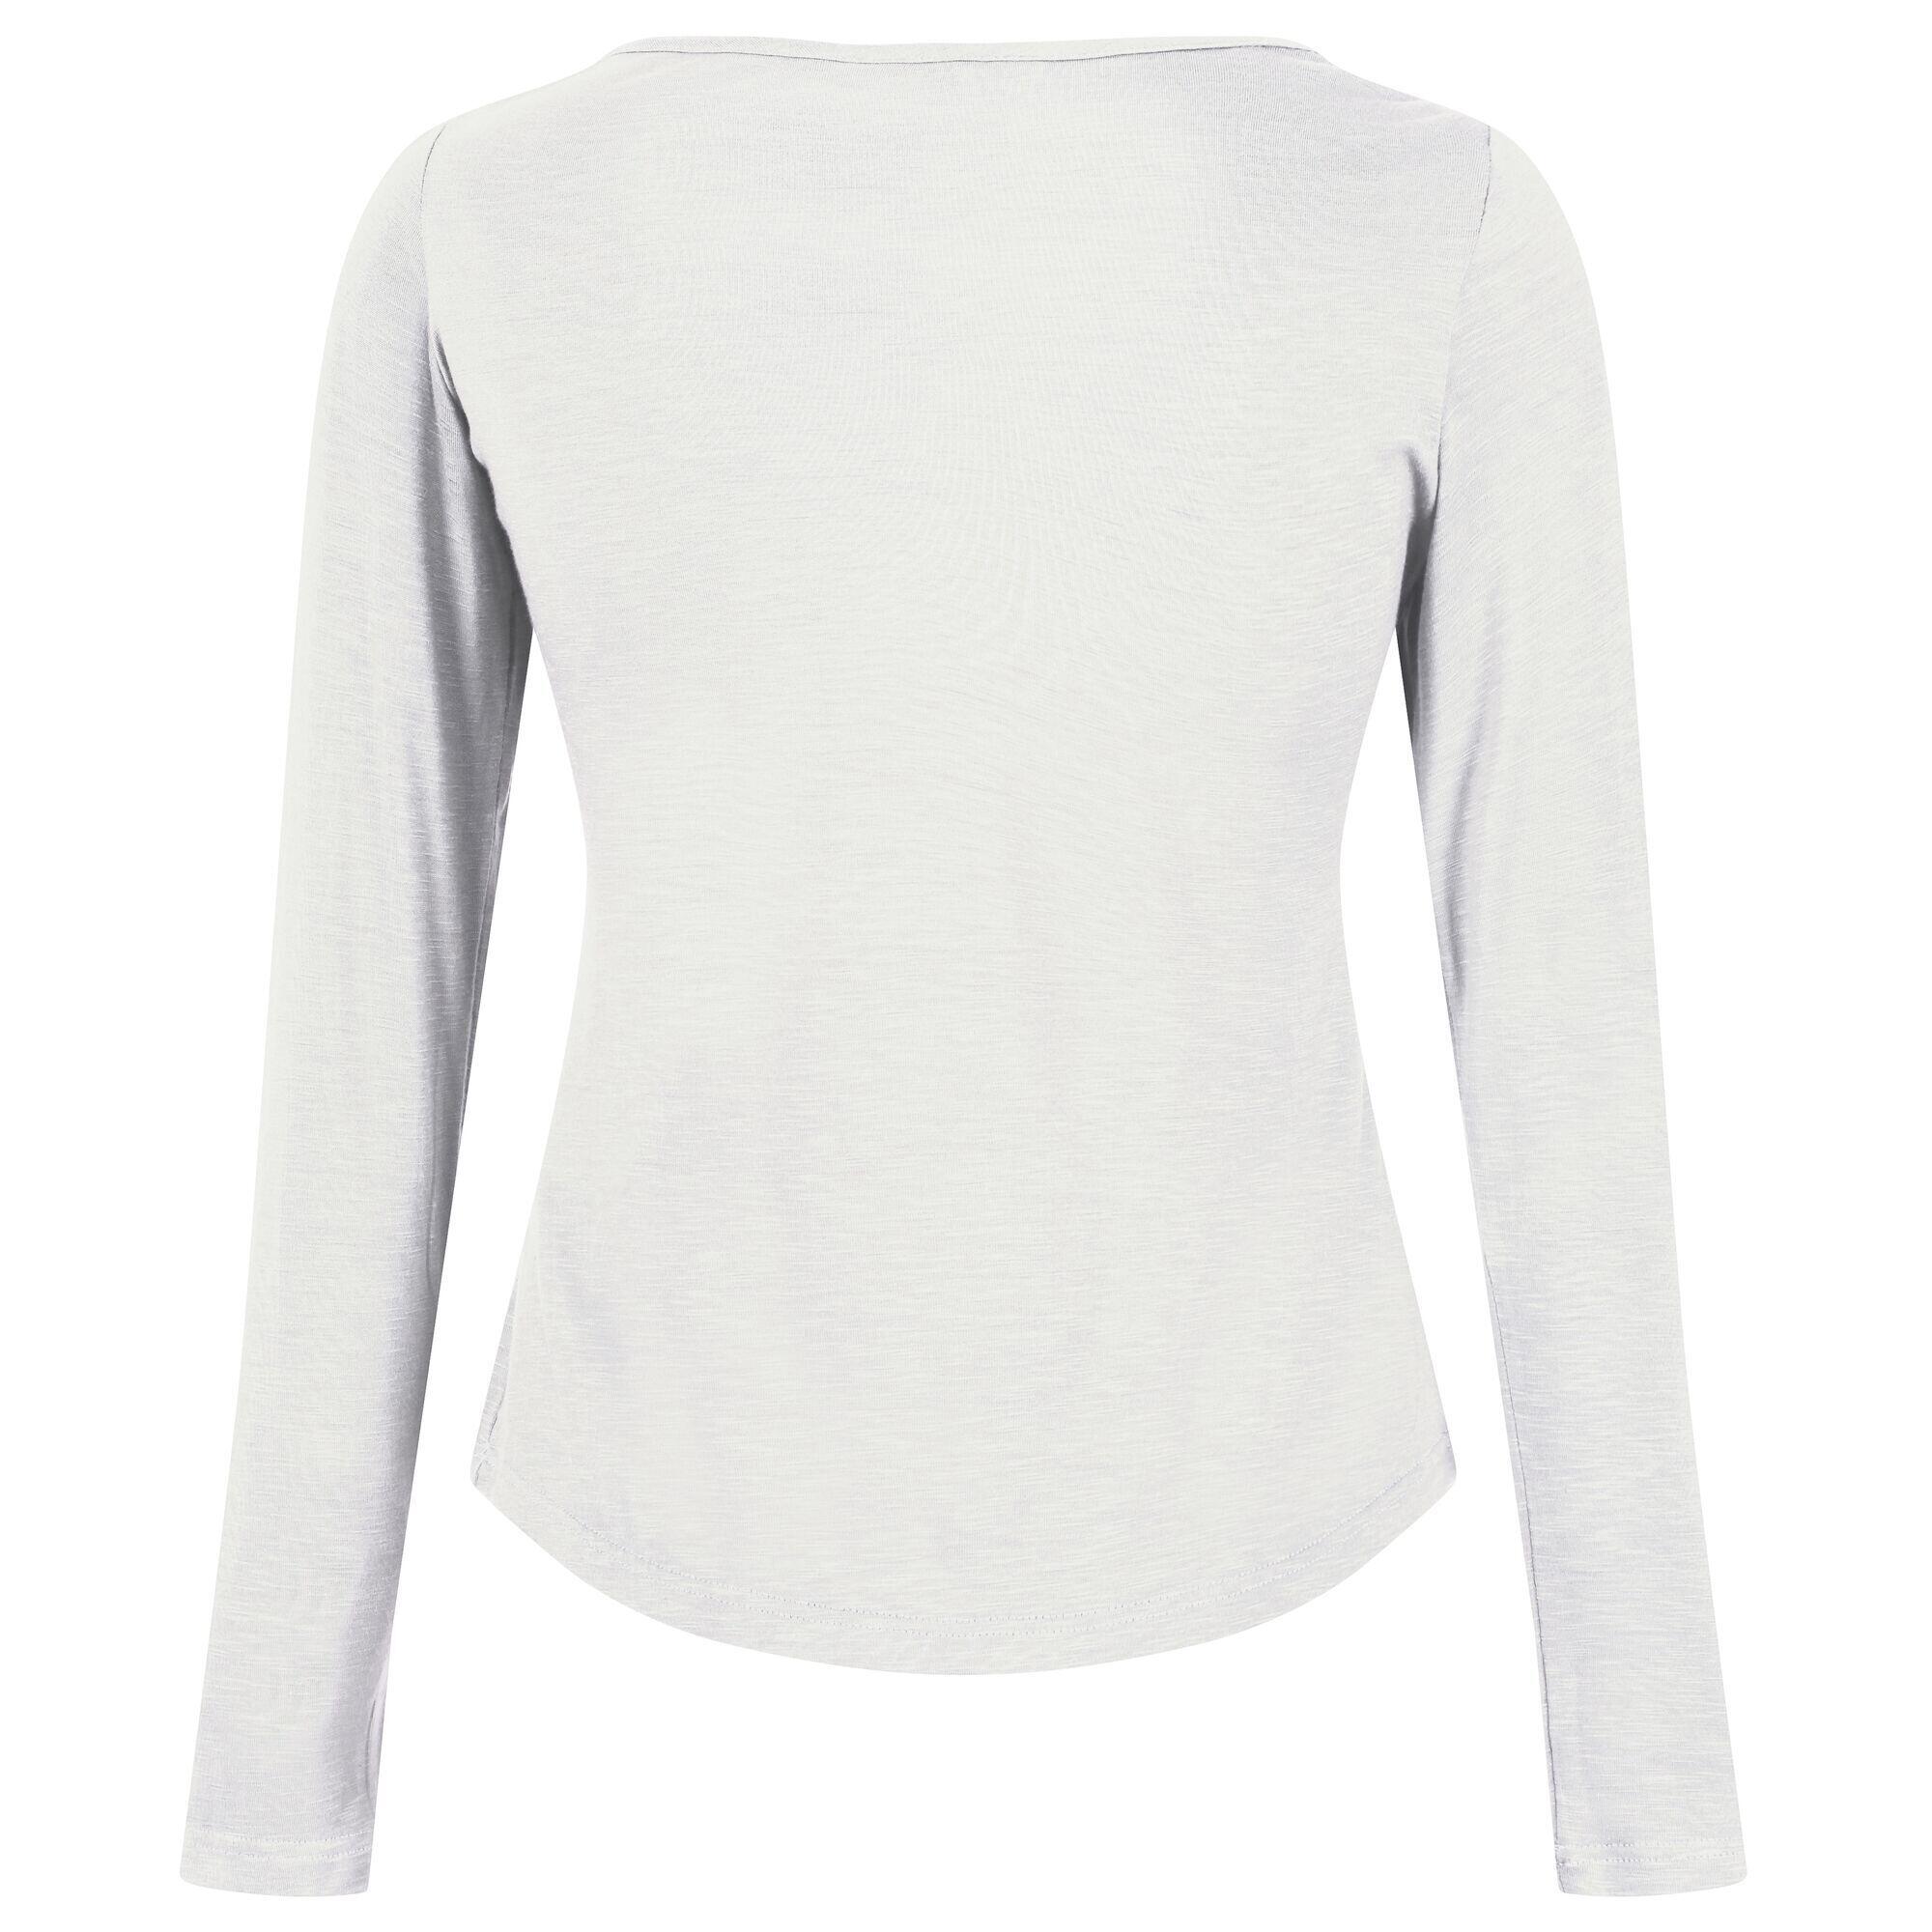 Womens/Ladies Lakeisha LongSleeved TShirt (White) 2/4